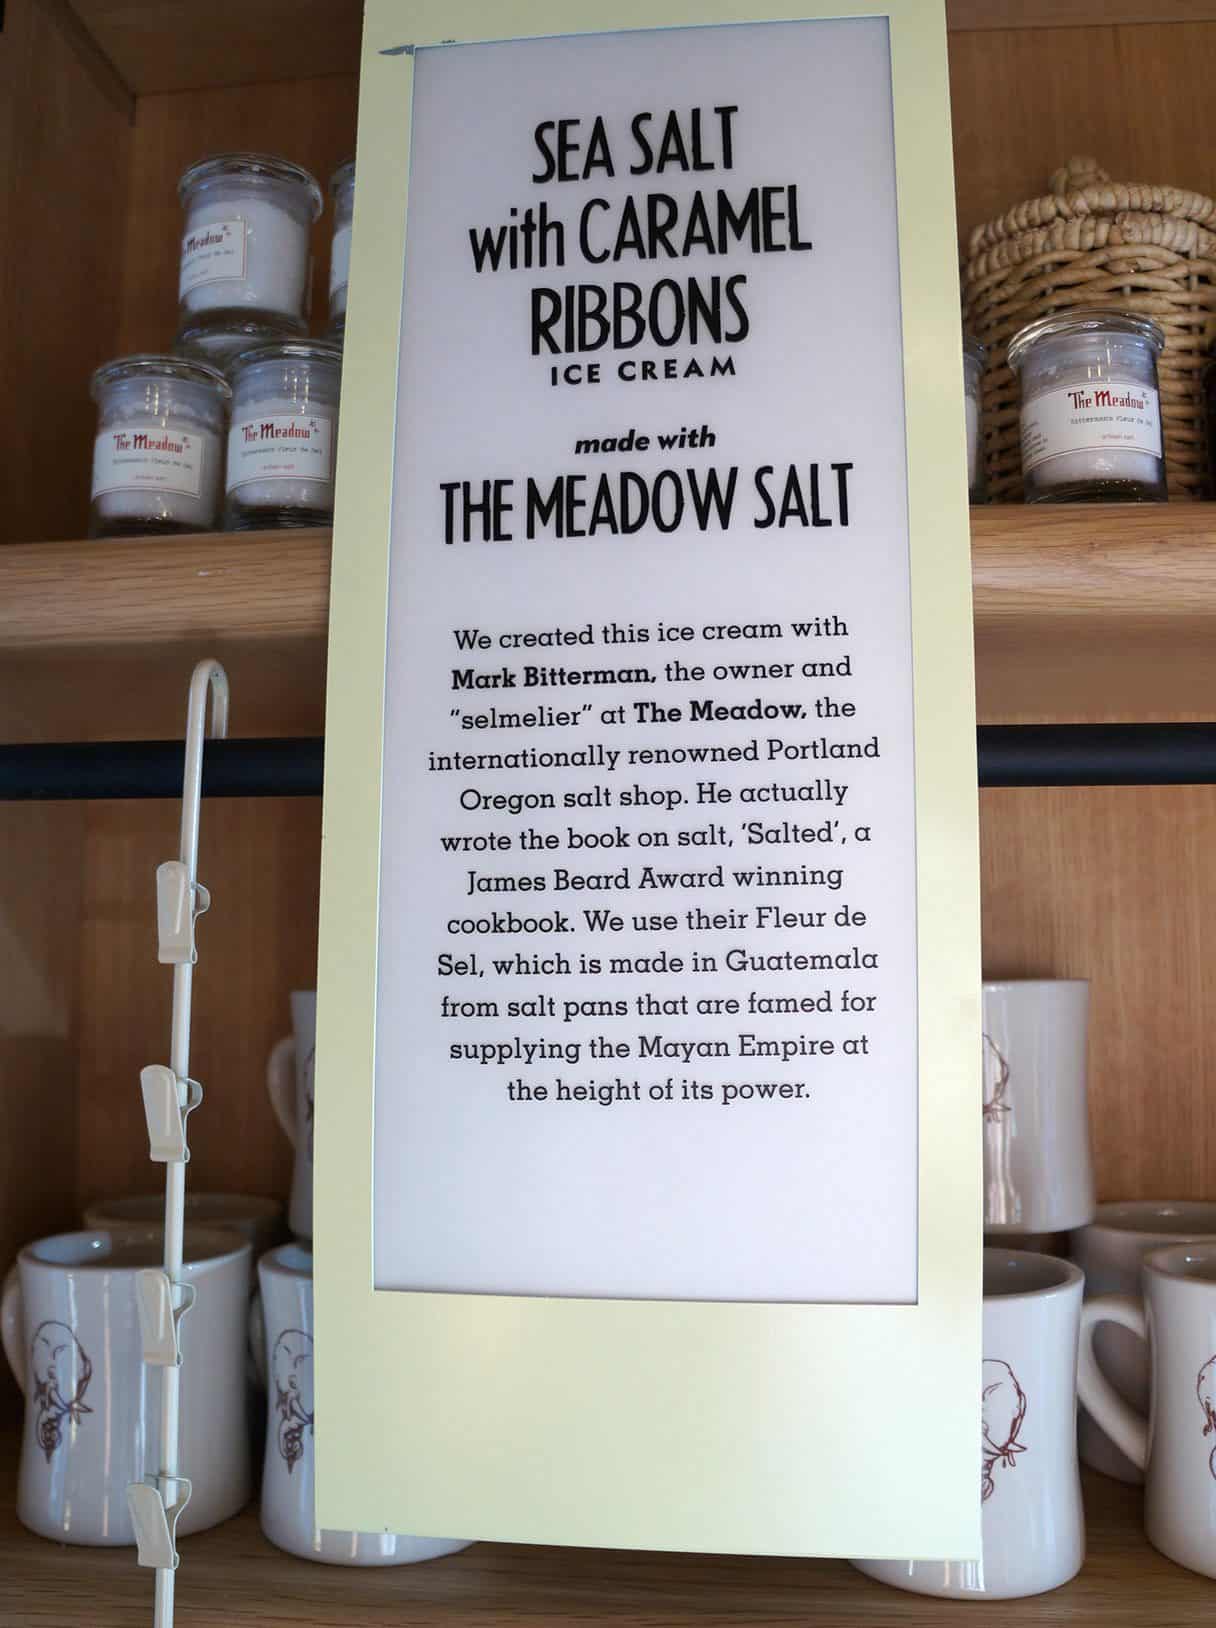 The Meadow Salt